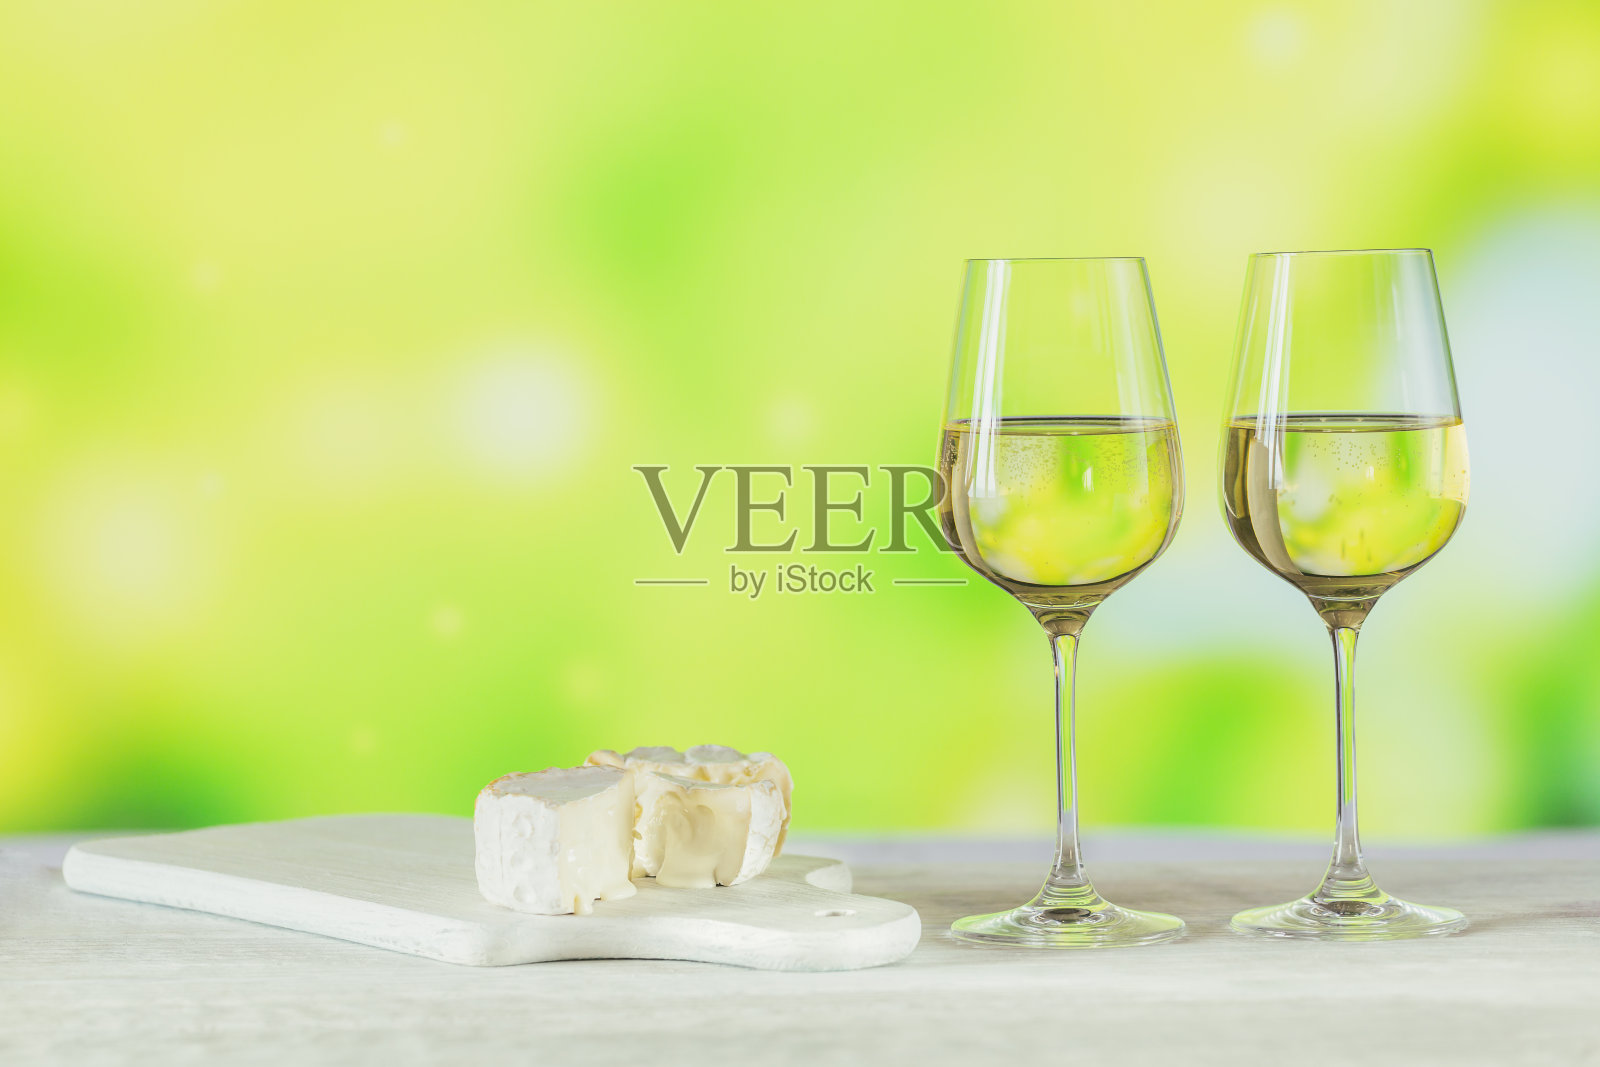 两杯白葡萄酒搭配浅绿色的芝士板。葡萄酒情绪概念照片摄影图片